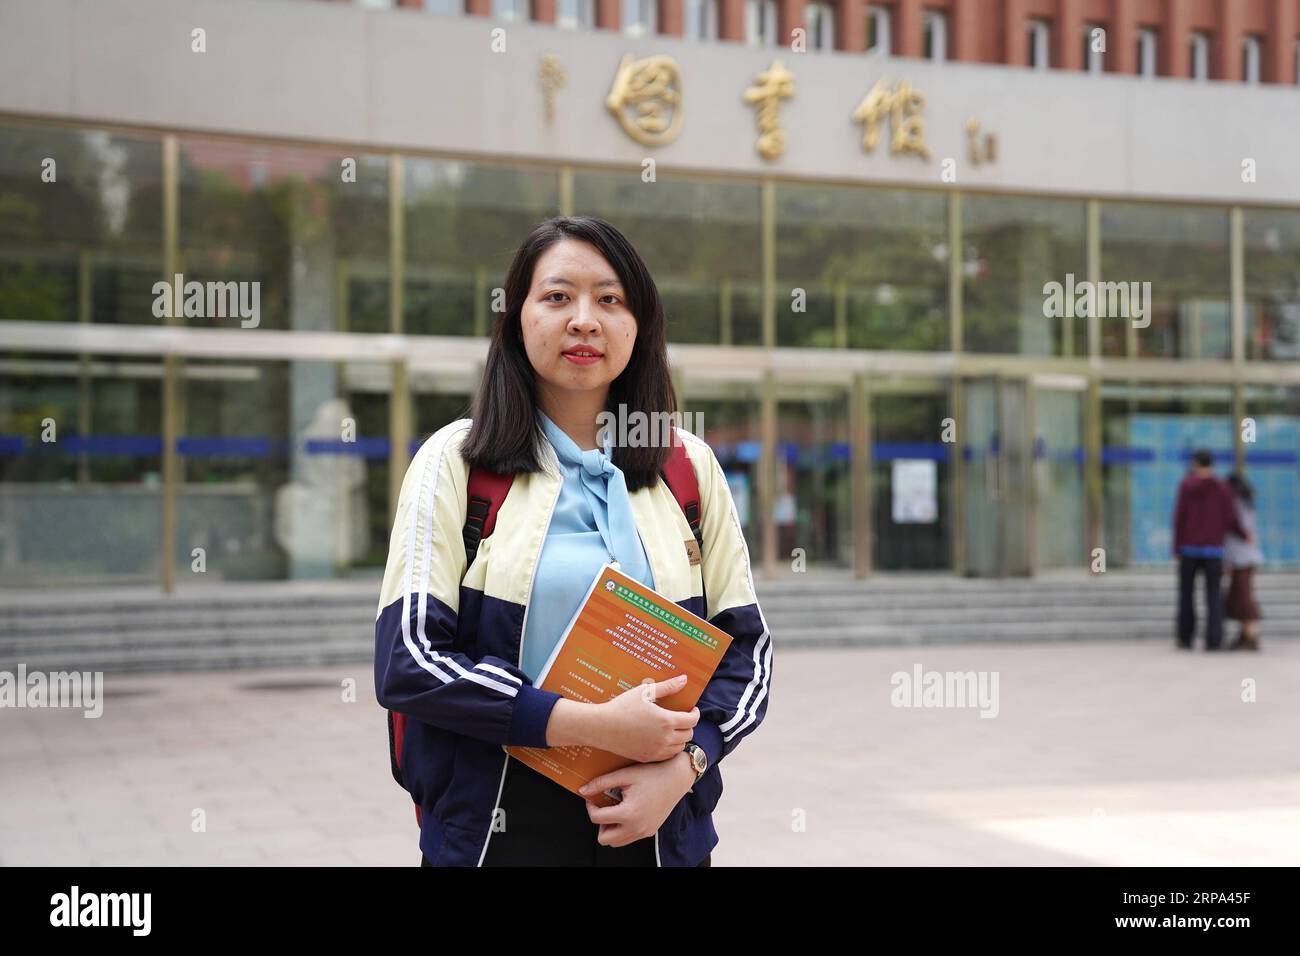 (190424) -- Pechino, 24 aprile 2019 (Xinhua) -- Phan Thi Ngoc Han dal Vietnam si erge di fronte alla biblioteca di Pechino studi universitari internazionali di Pechino, capitale della Cina, 21 aprile 2019. Lei è venuto in Cina nel 2018. Attualmente sta prendendo i corsi di preparazione a Pechino studi universitari internazionali. Ella si è interessata in Cina quando lei era una bambina. Dopo imparare il cinese per tre anni in Vietnam, lei è venuto in Cina per uno studio ulteriore. Lei spera di diventare un insegnante cinese in Vietnam dopo la laurea. Con la proposta di cinghia e iniziativa su strada, un numero crescente di o Foto Stock